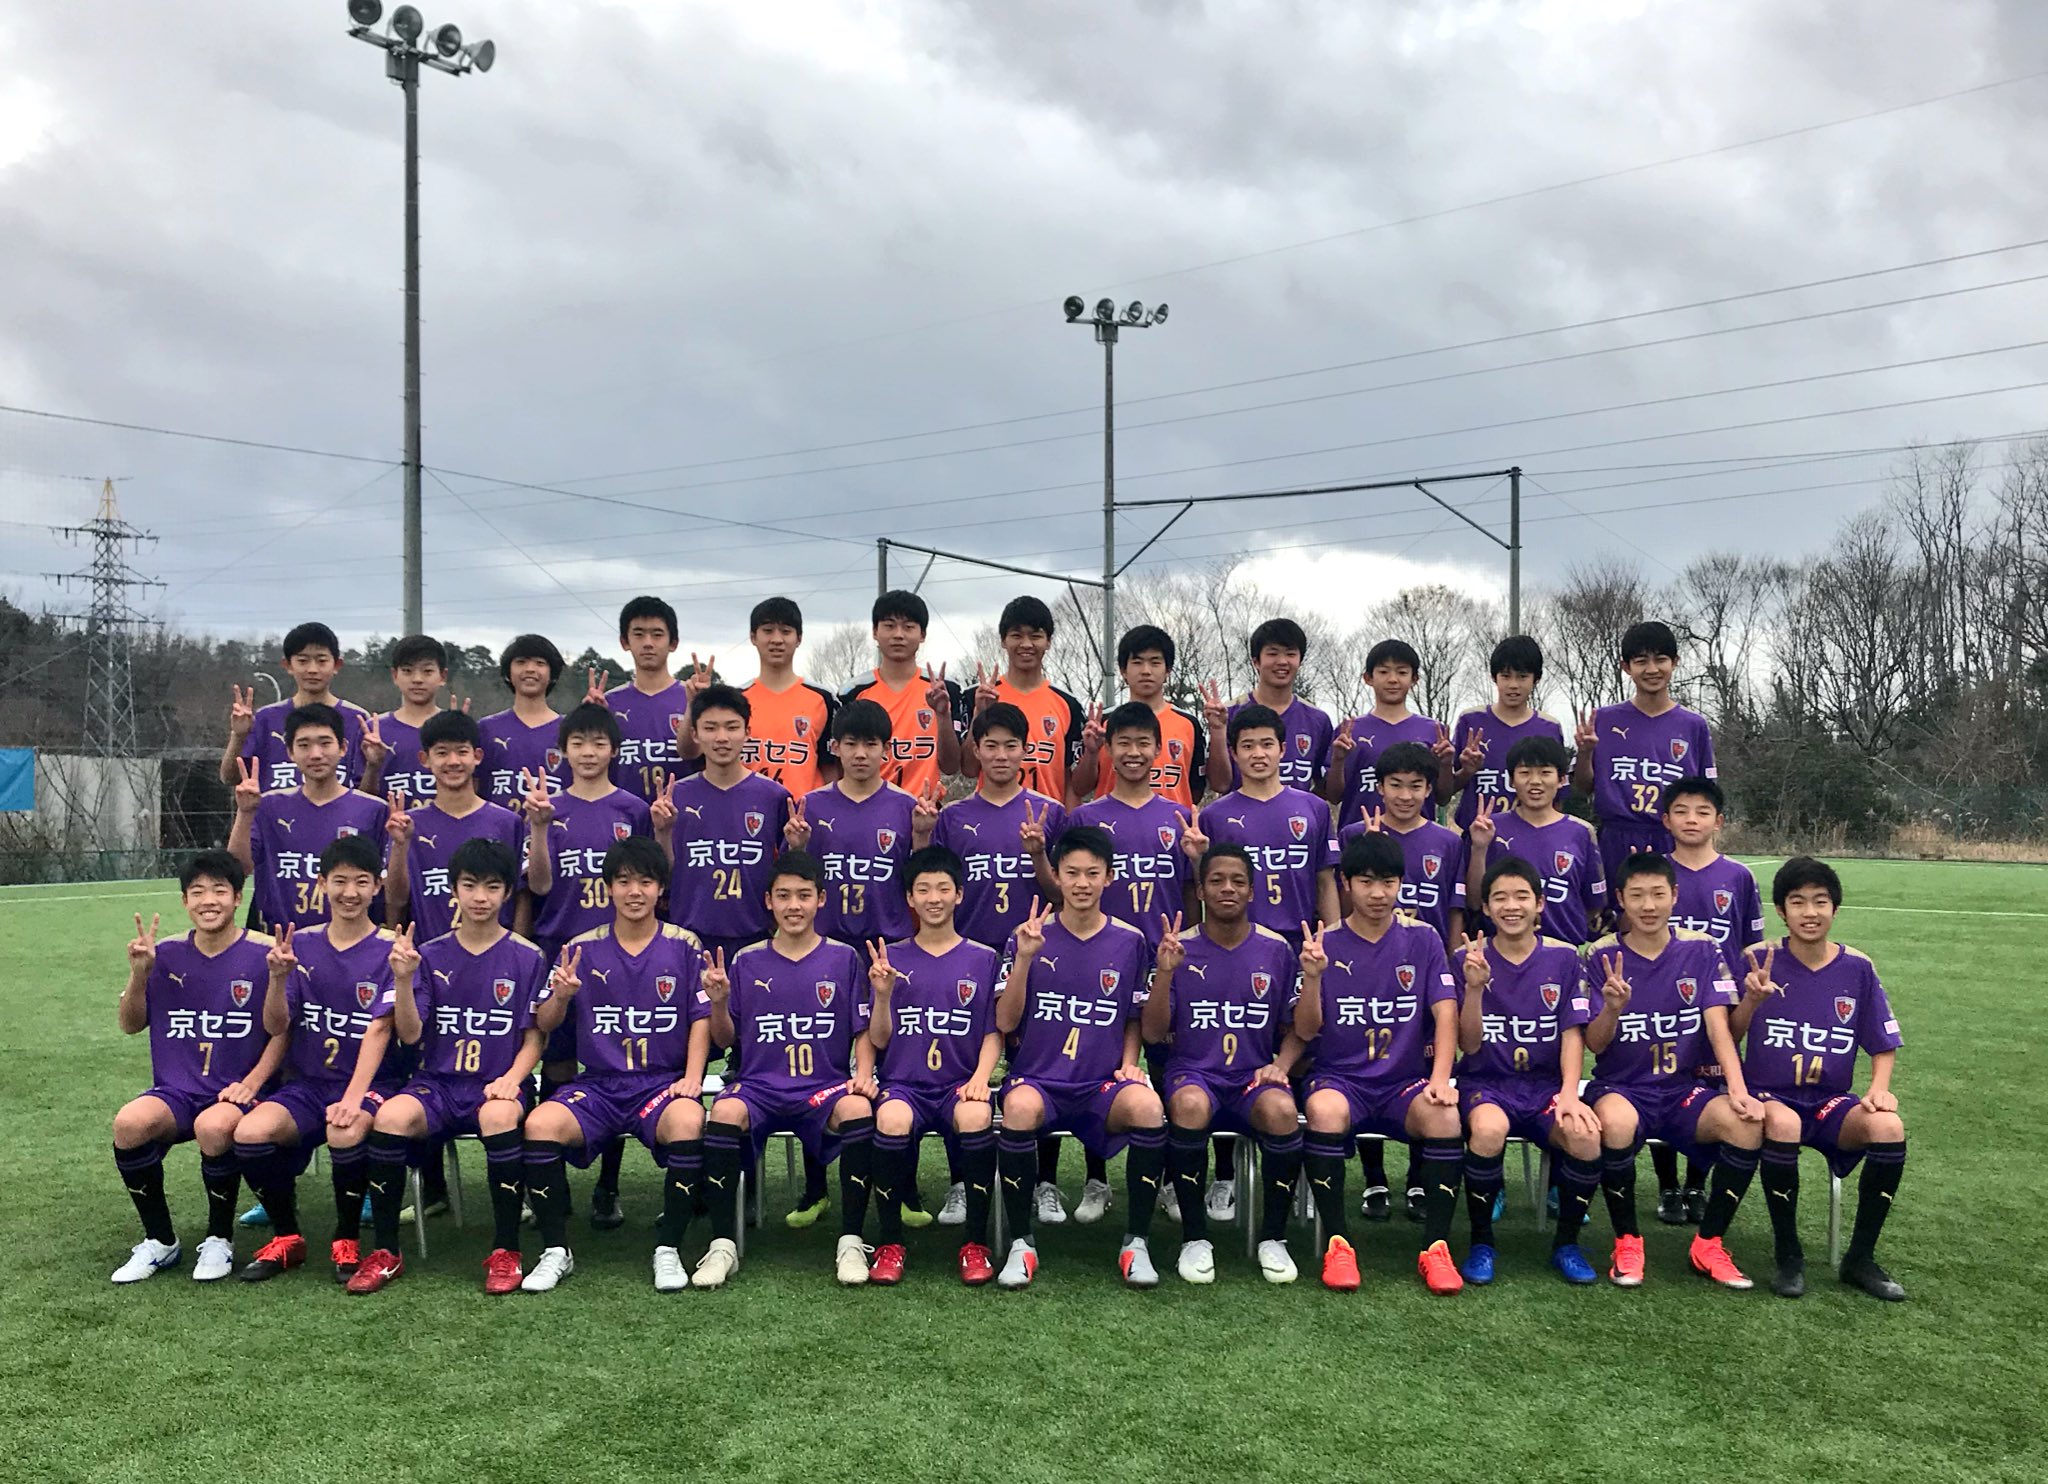 京都サンガf C 今日はu 15チームが集合写真撮影 めちゃくちゃ寒い中 選手たちは半袖で頑張りました 今季も サンガアカデミー へご声援をよろしくお願いします Sanga 京都サンガ T Co Xec0oo85vf Twitter